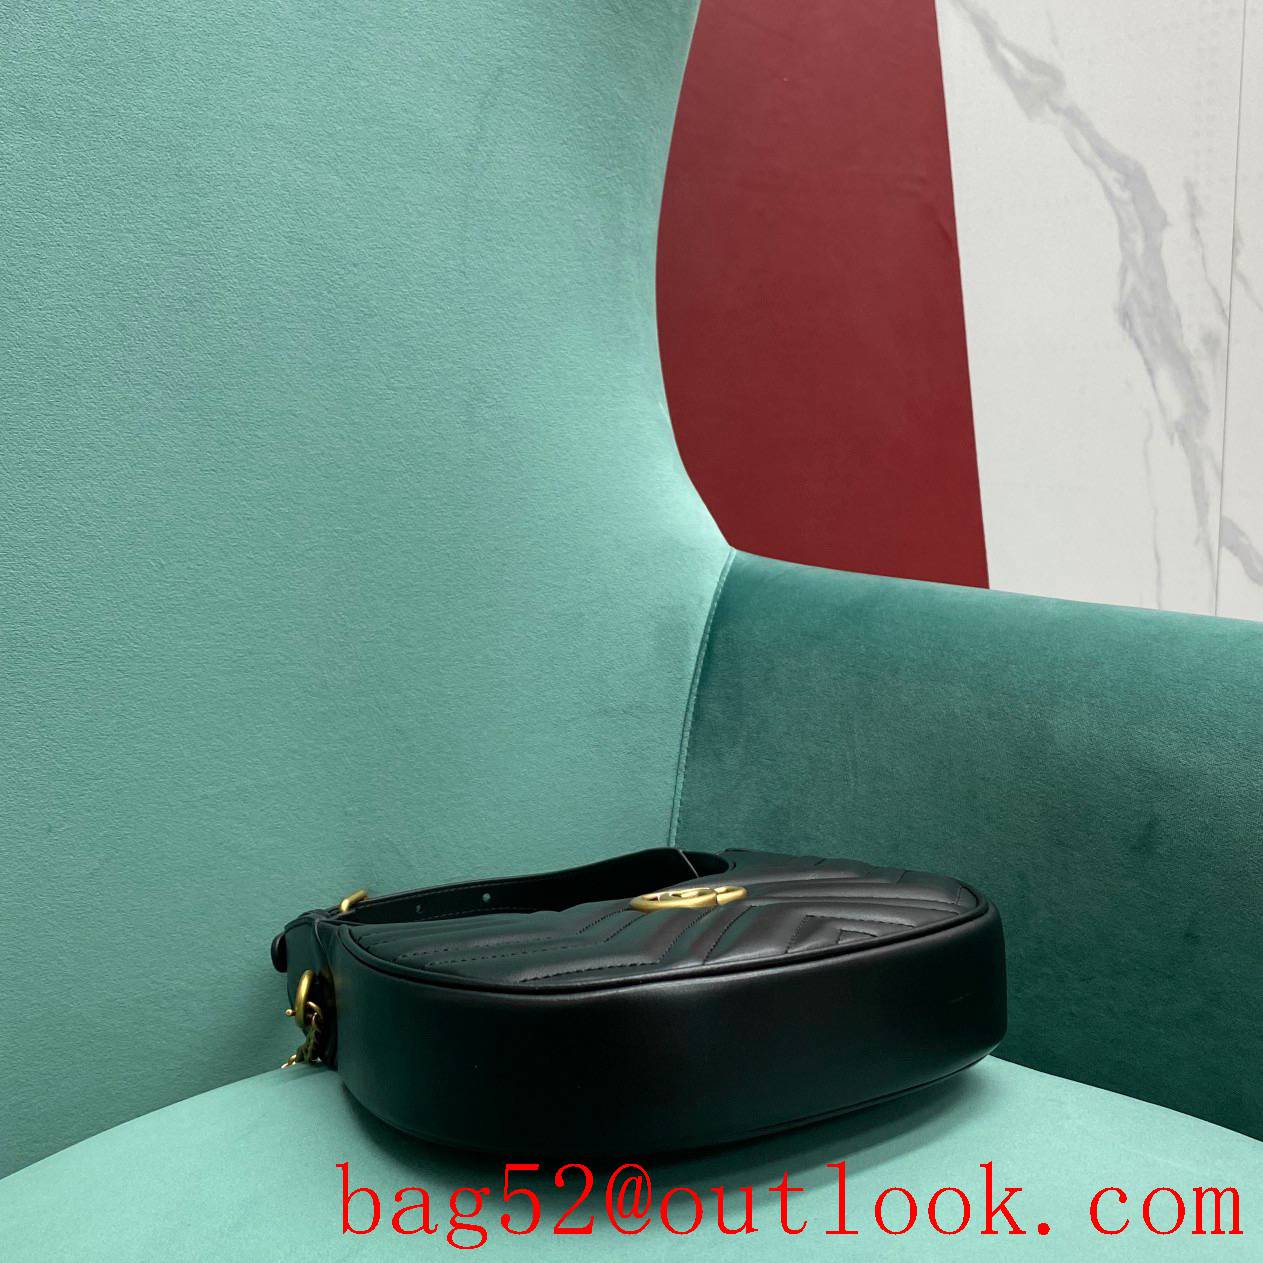 Gucci GG Marmont underarm black half-moon handbag